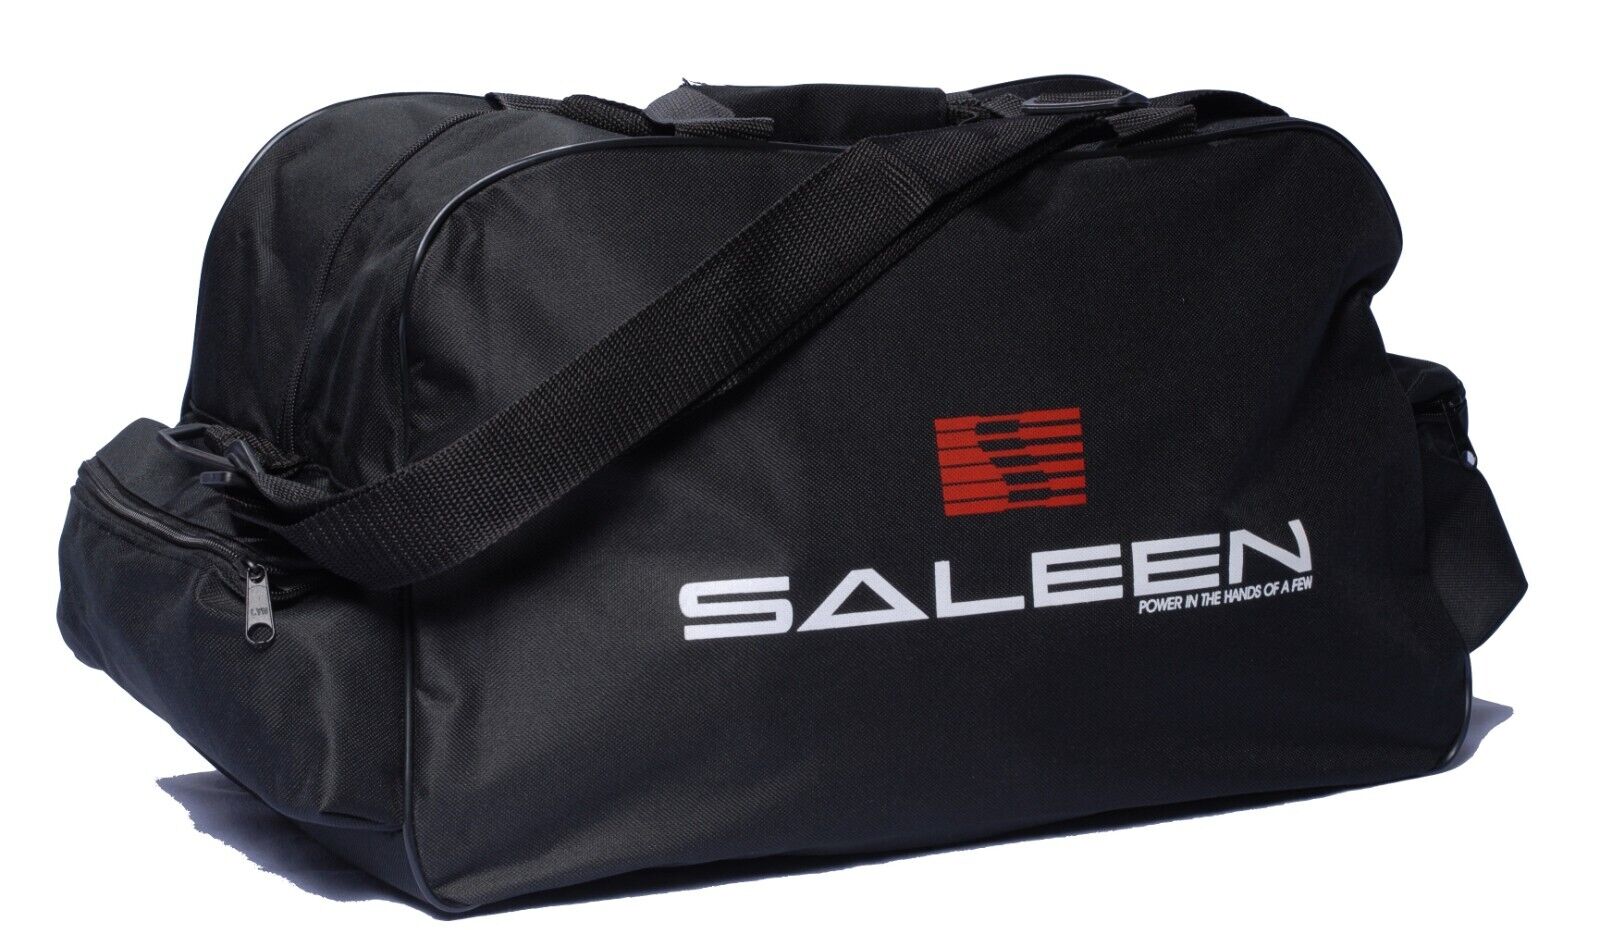 Mustang Saleen Bag / Travel / Gym / Sports / Shoulder / Messanger